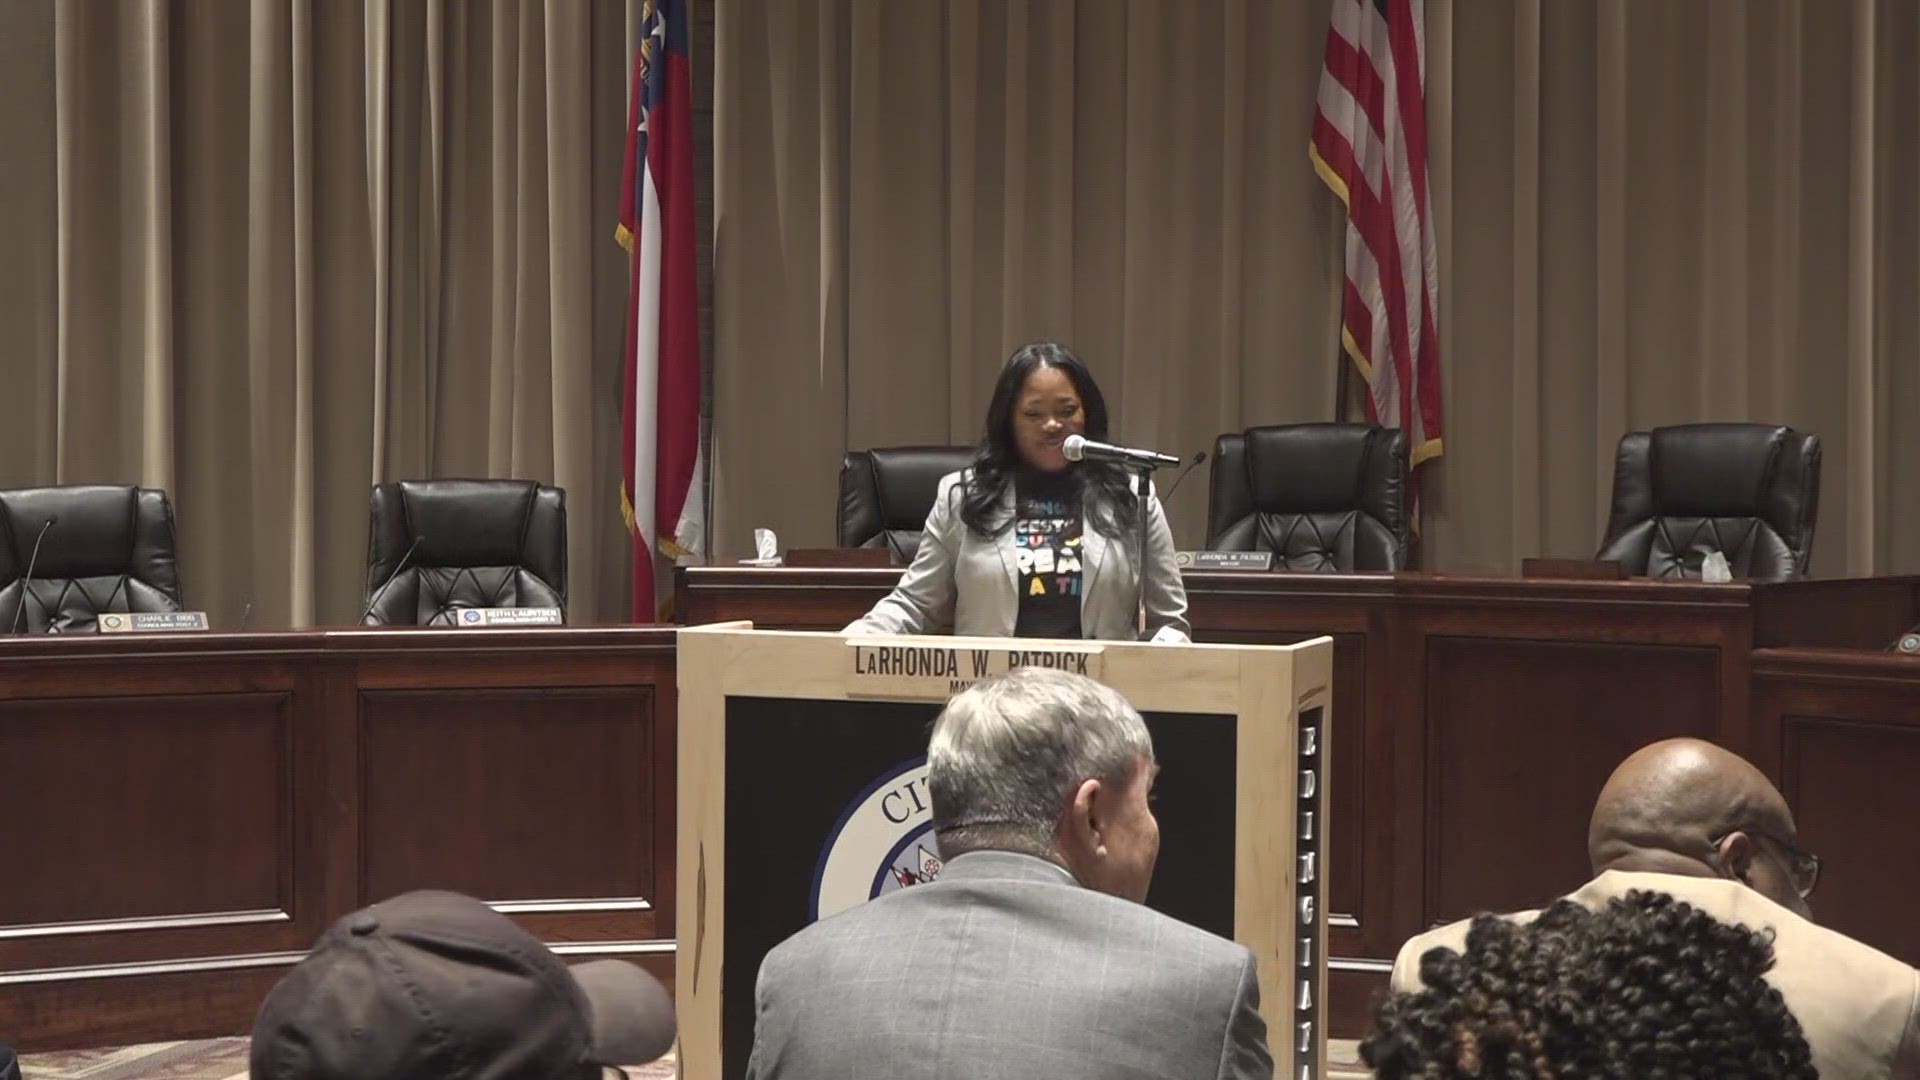 Warner Robins Mayor LaRhonda Patrick is holding a press conference after recent string of violence.